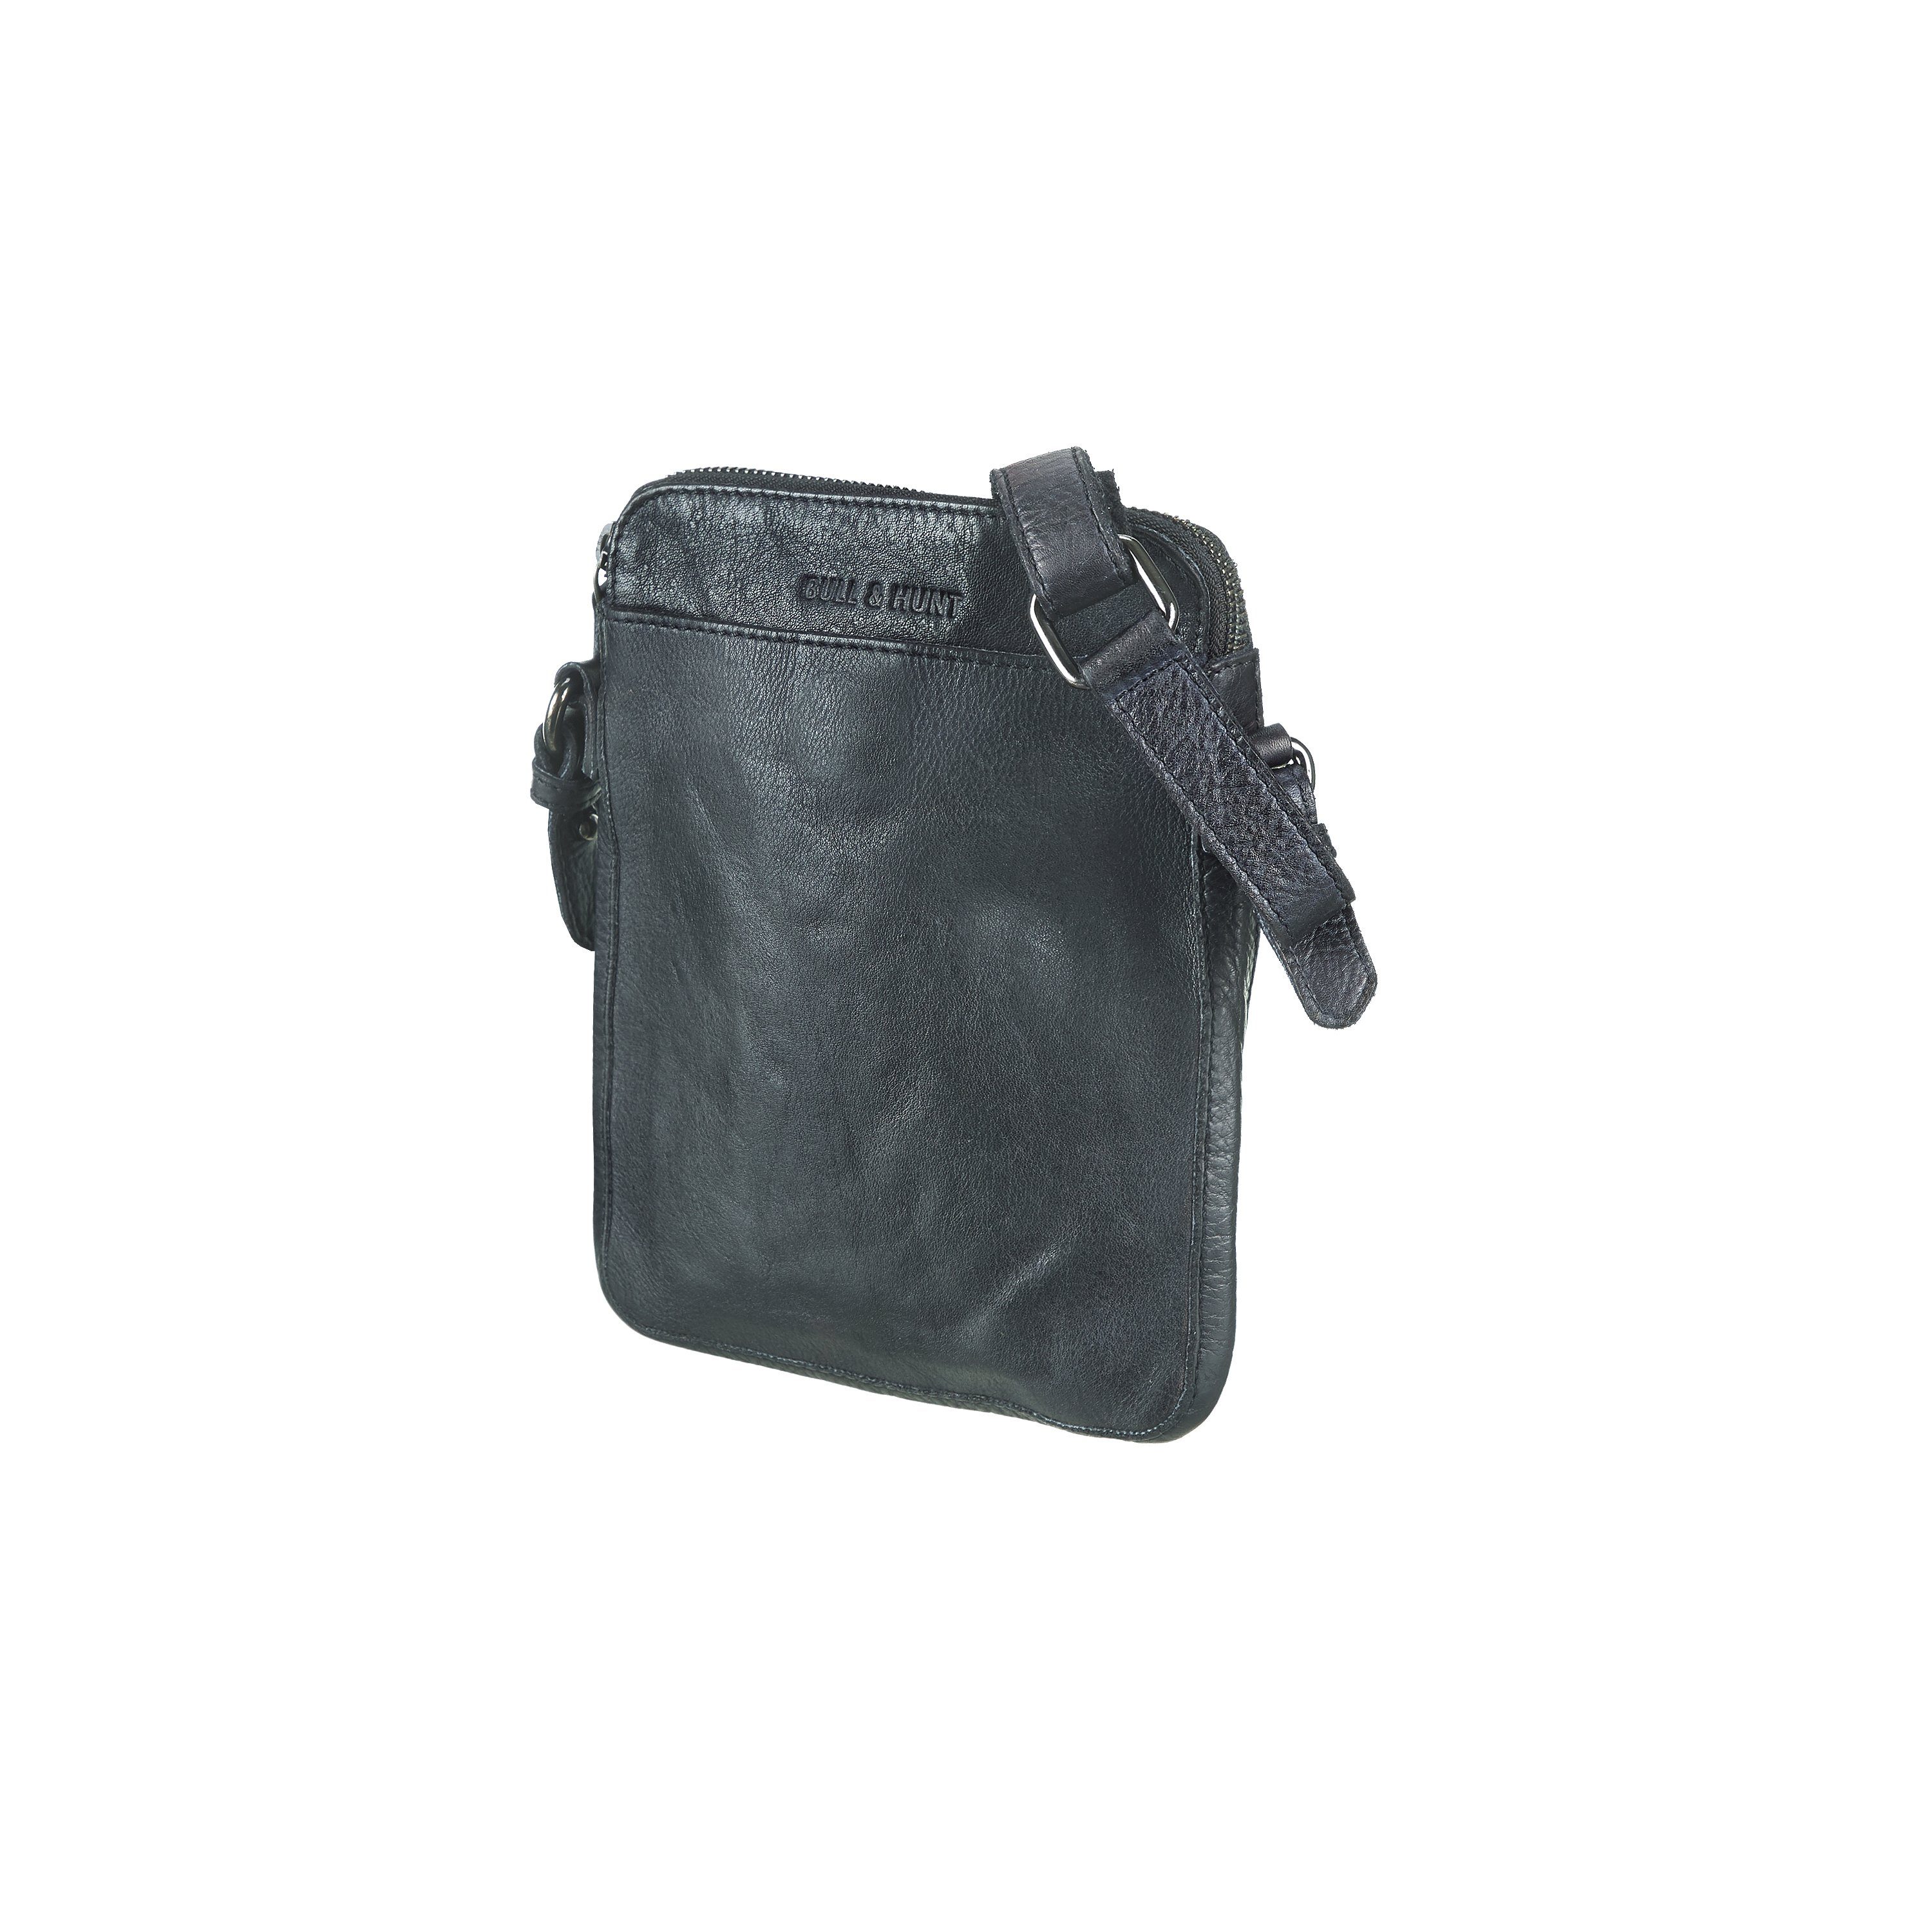 Hunt Mini & messenger Bag Bull black pocket